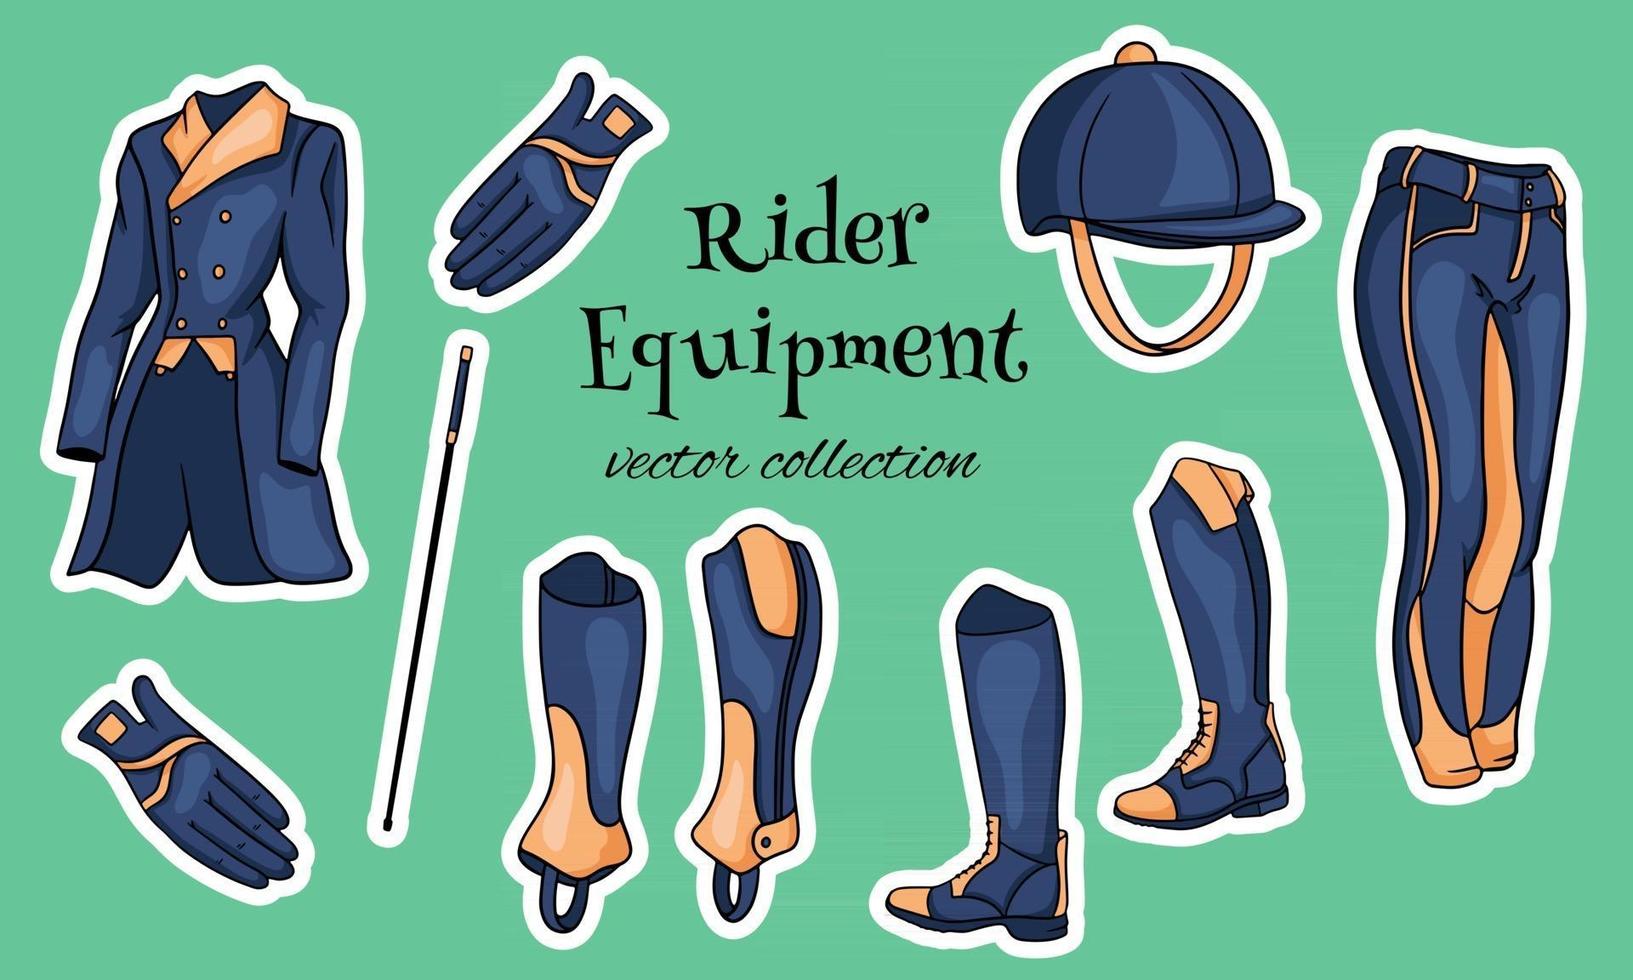 outfit rijder een set kleding voor een jockey laarzen pedjak broek zweep helm in cartoon stijl vector